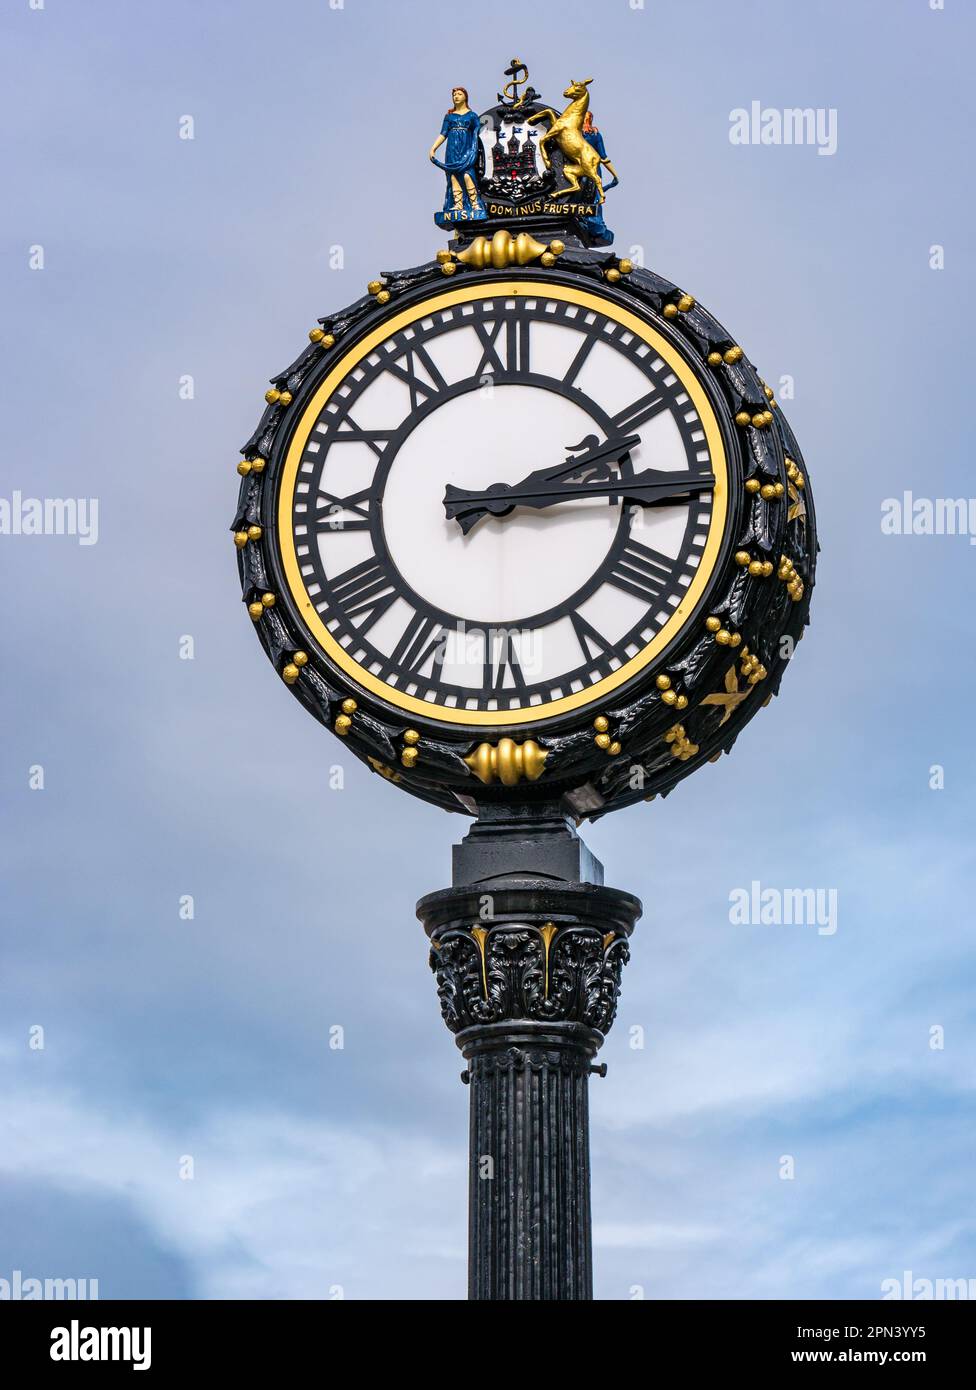 Nahaufnahme der kunstvoll verzierten viktorianischen Uhr an der Elm Row, Leith Walk, Edinburgh, Schottland, Großbritannien Stockfoto